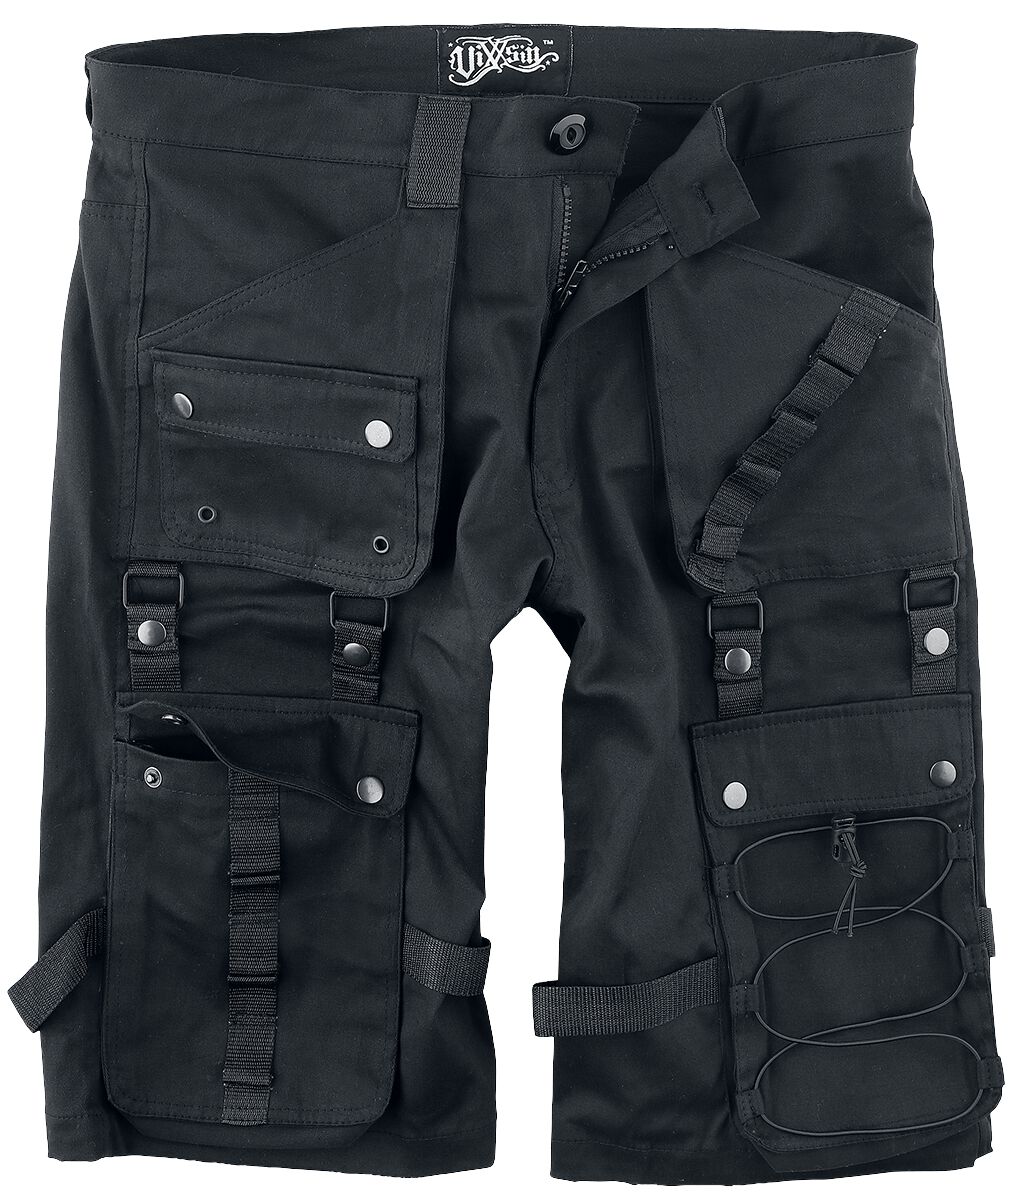 Vixxsin - Gothic Short - Lyall Shorts - 30 bis 38 - für Männer - Größe 34 - schwarz